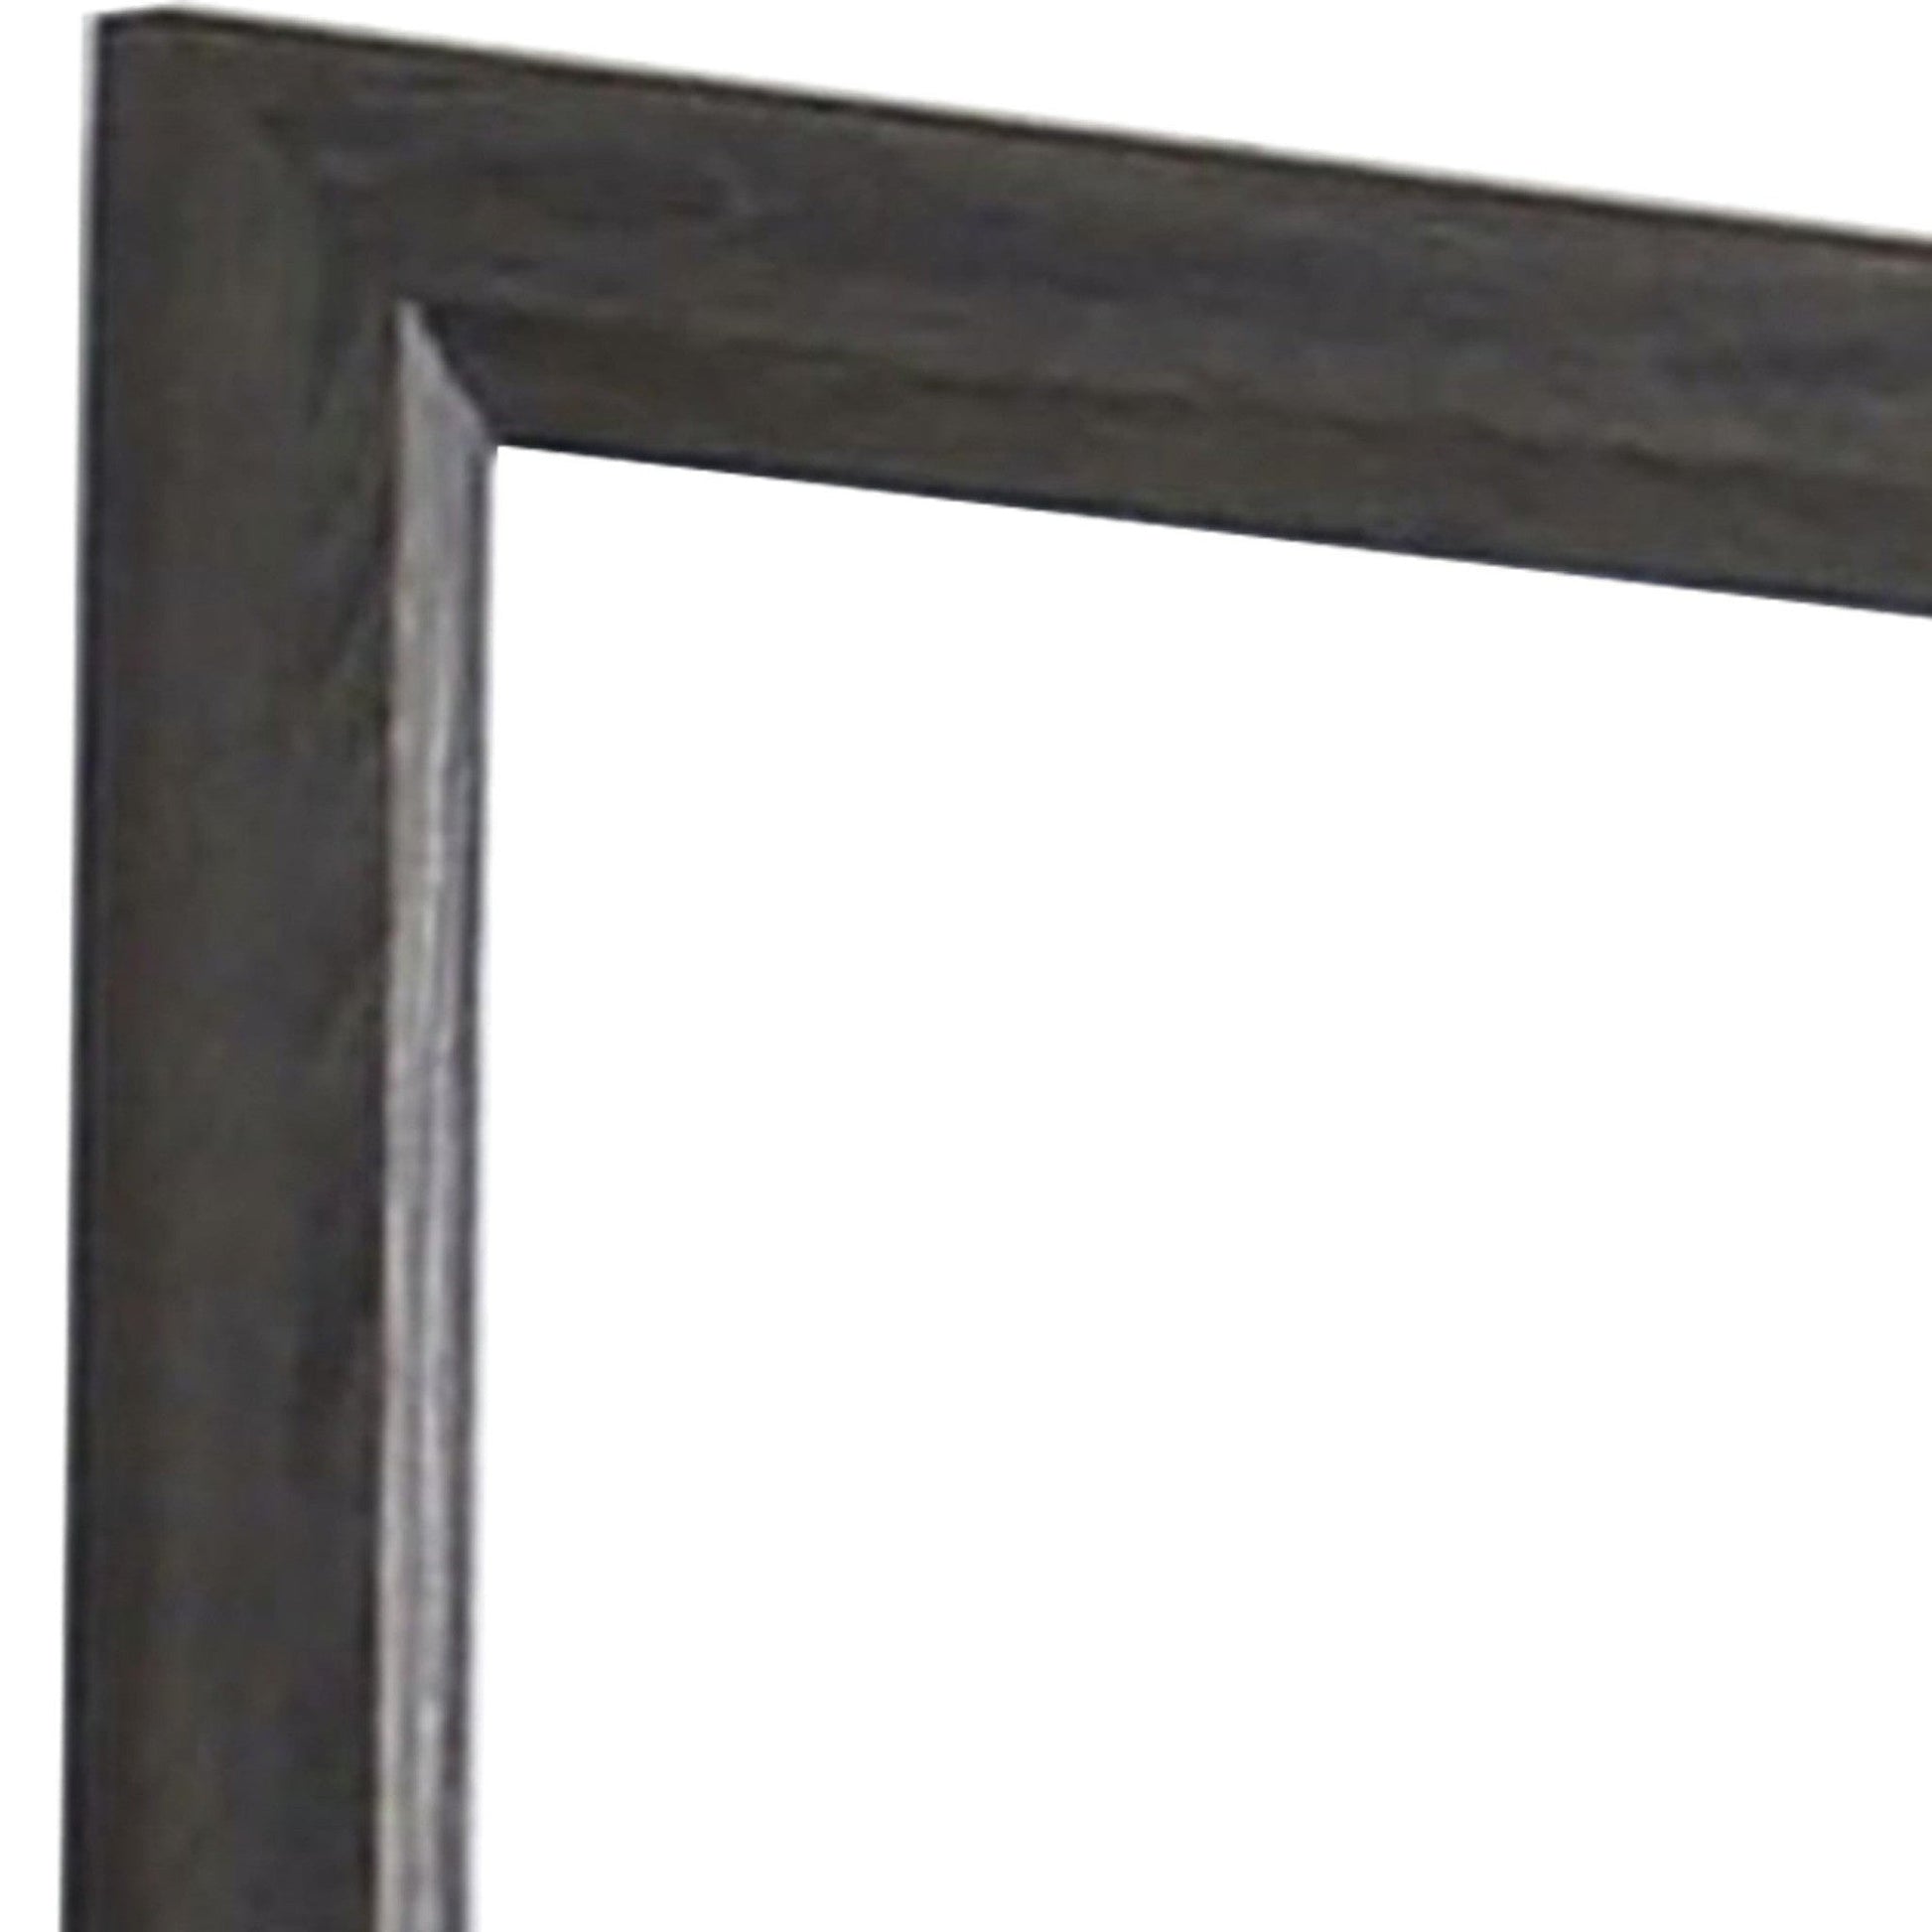 Benzara 39" Gray Contemporary Wooden Frame Mirror